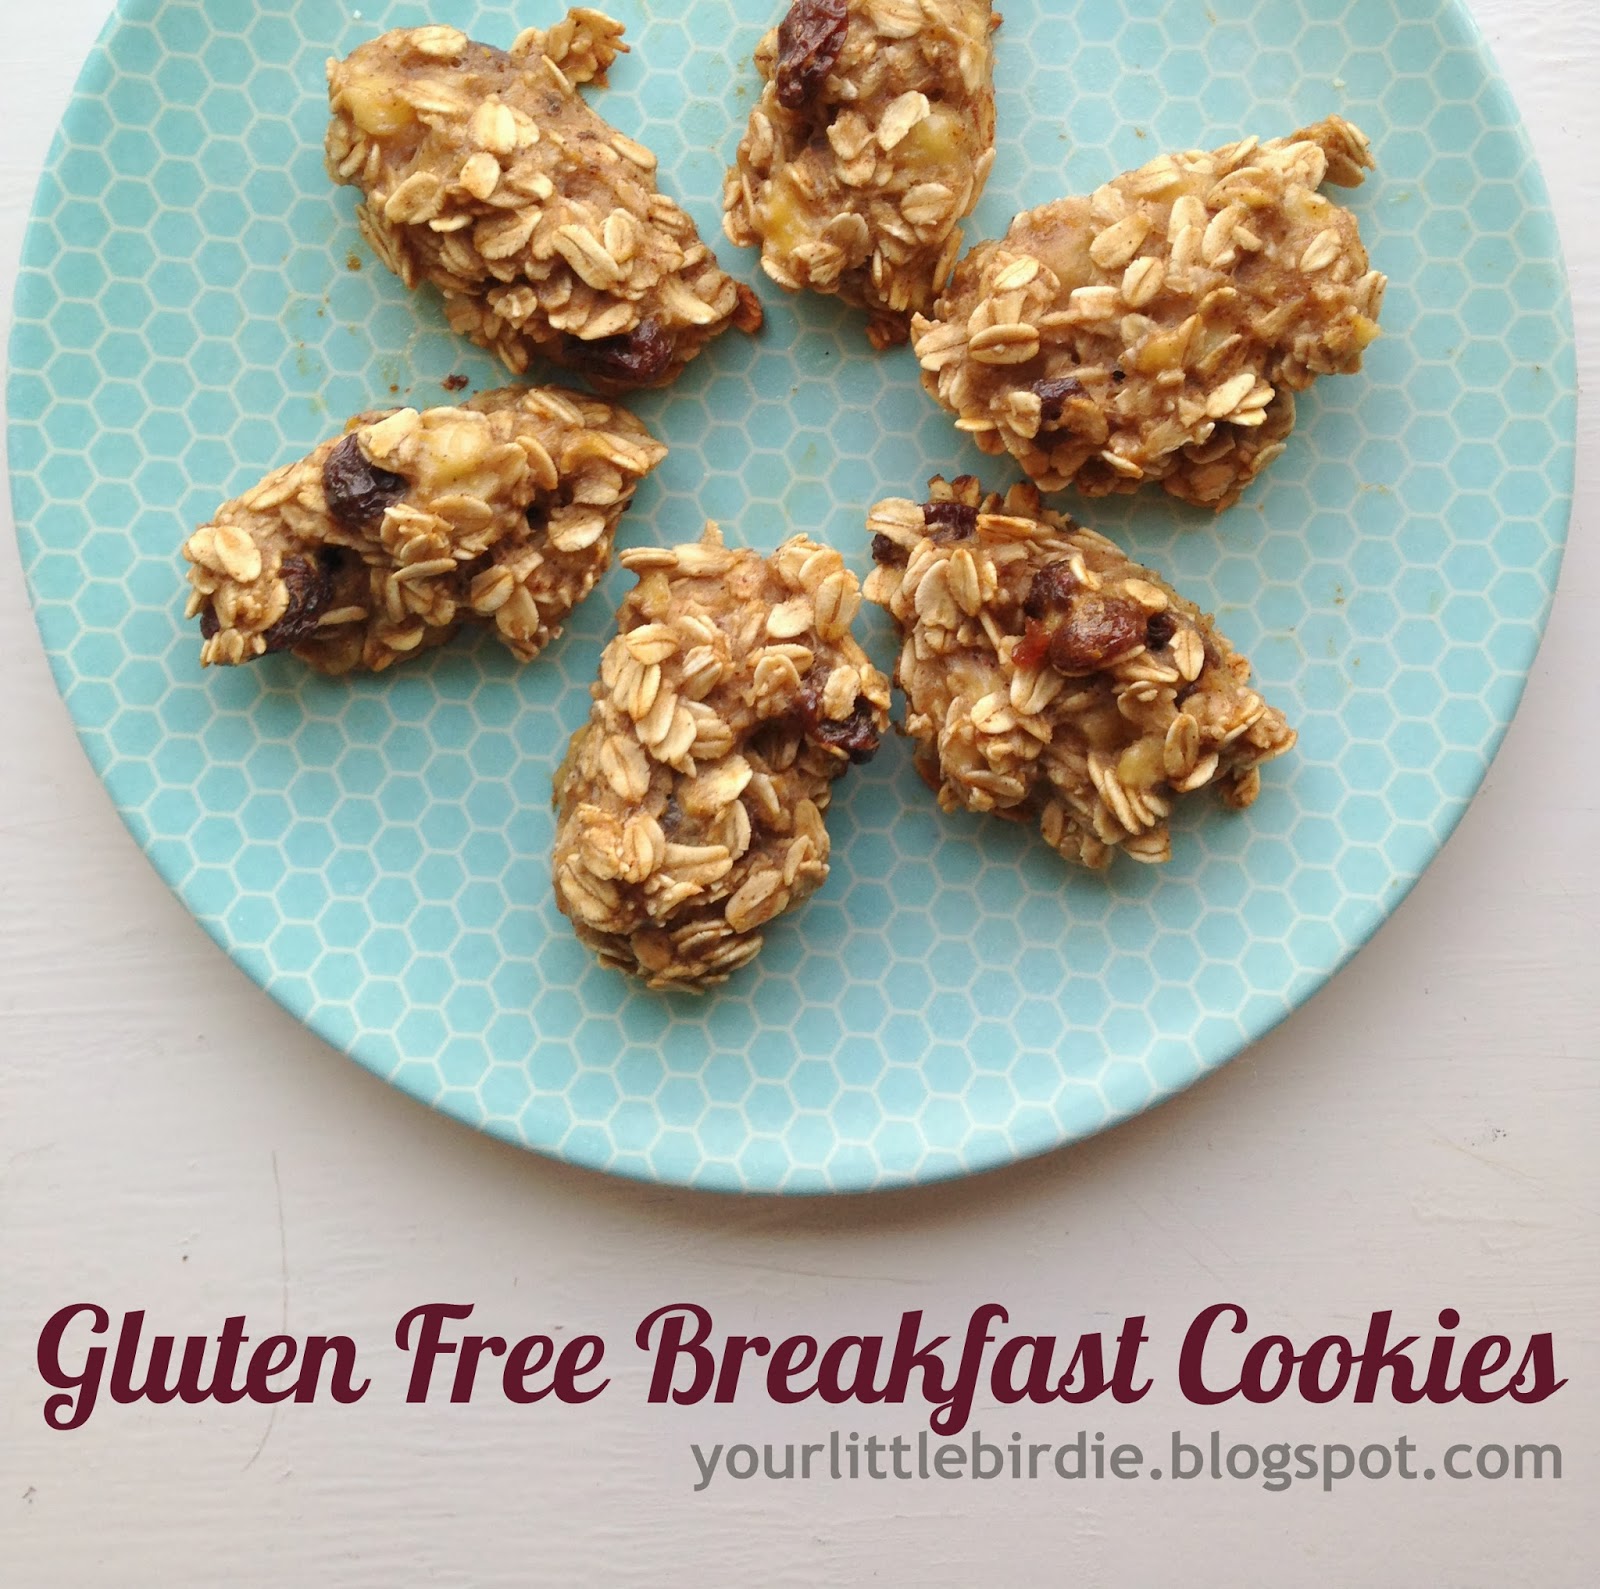 Your Little Birdie: Gluten Free and Low Fat Breakfast Cookies